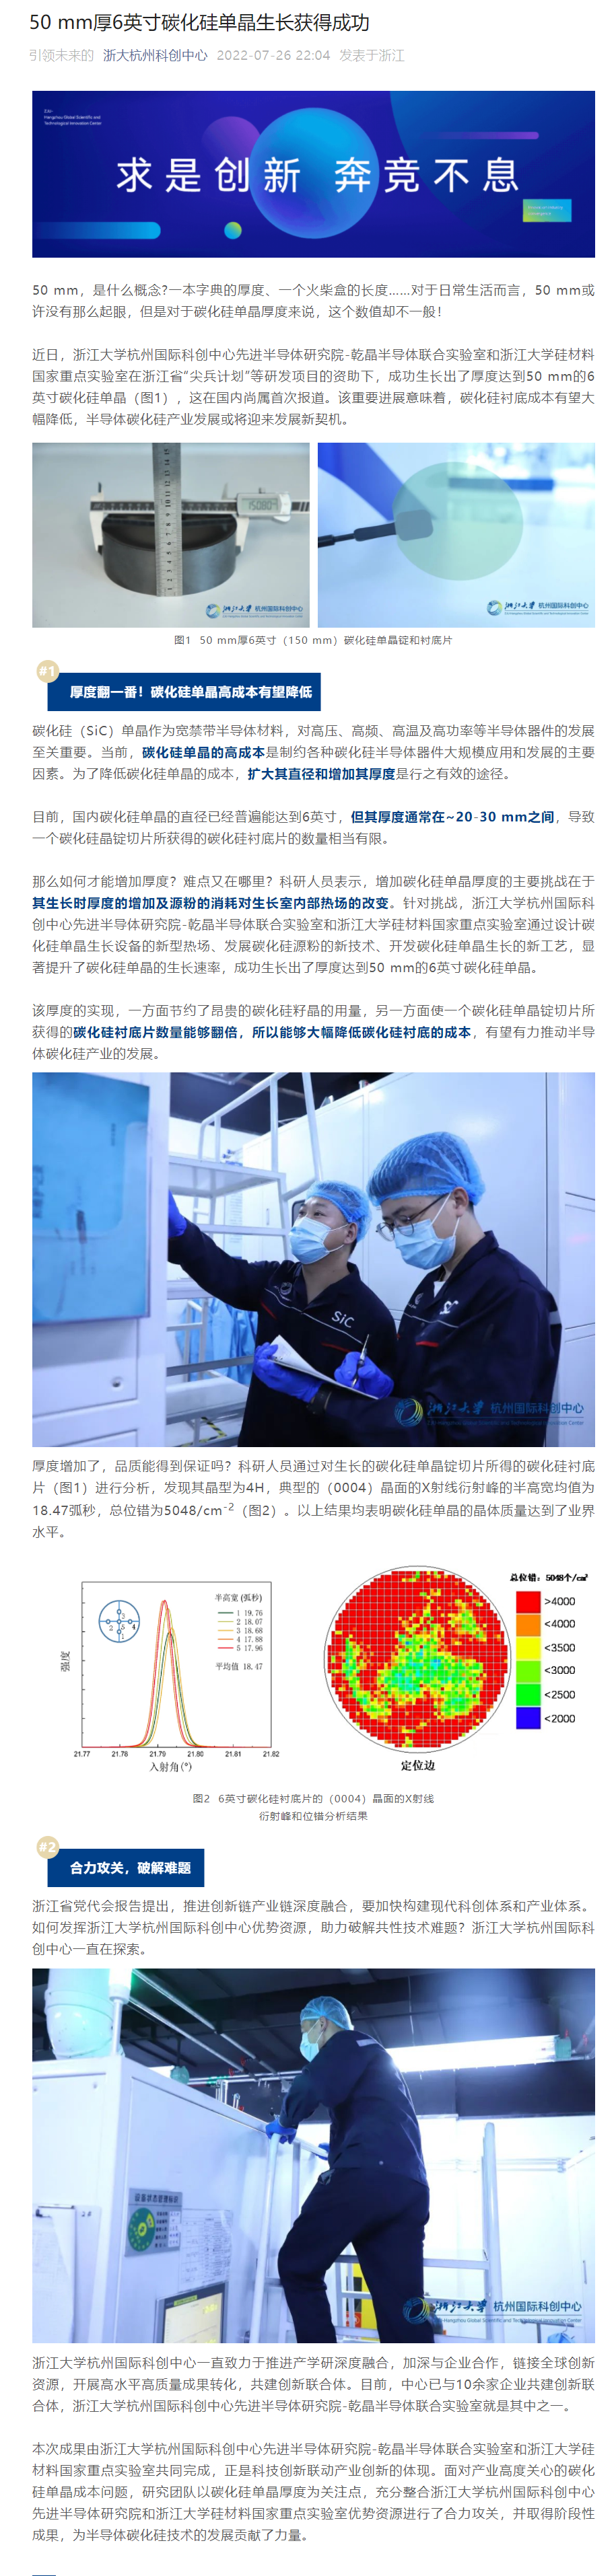 浙江大学杭州国际科创中心 50mm 厚 6 英寸碳化硅单晶生长成功，且晶体质量达到业界水平